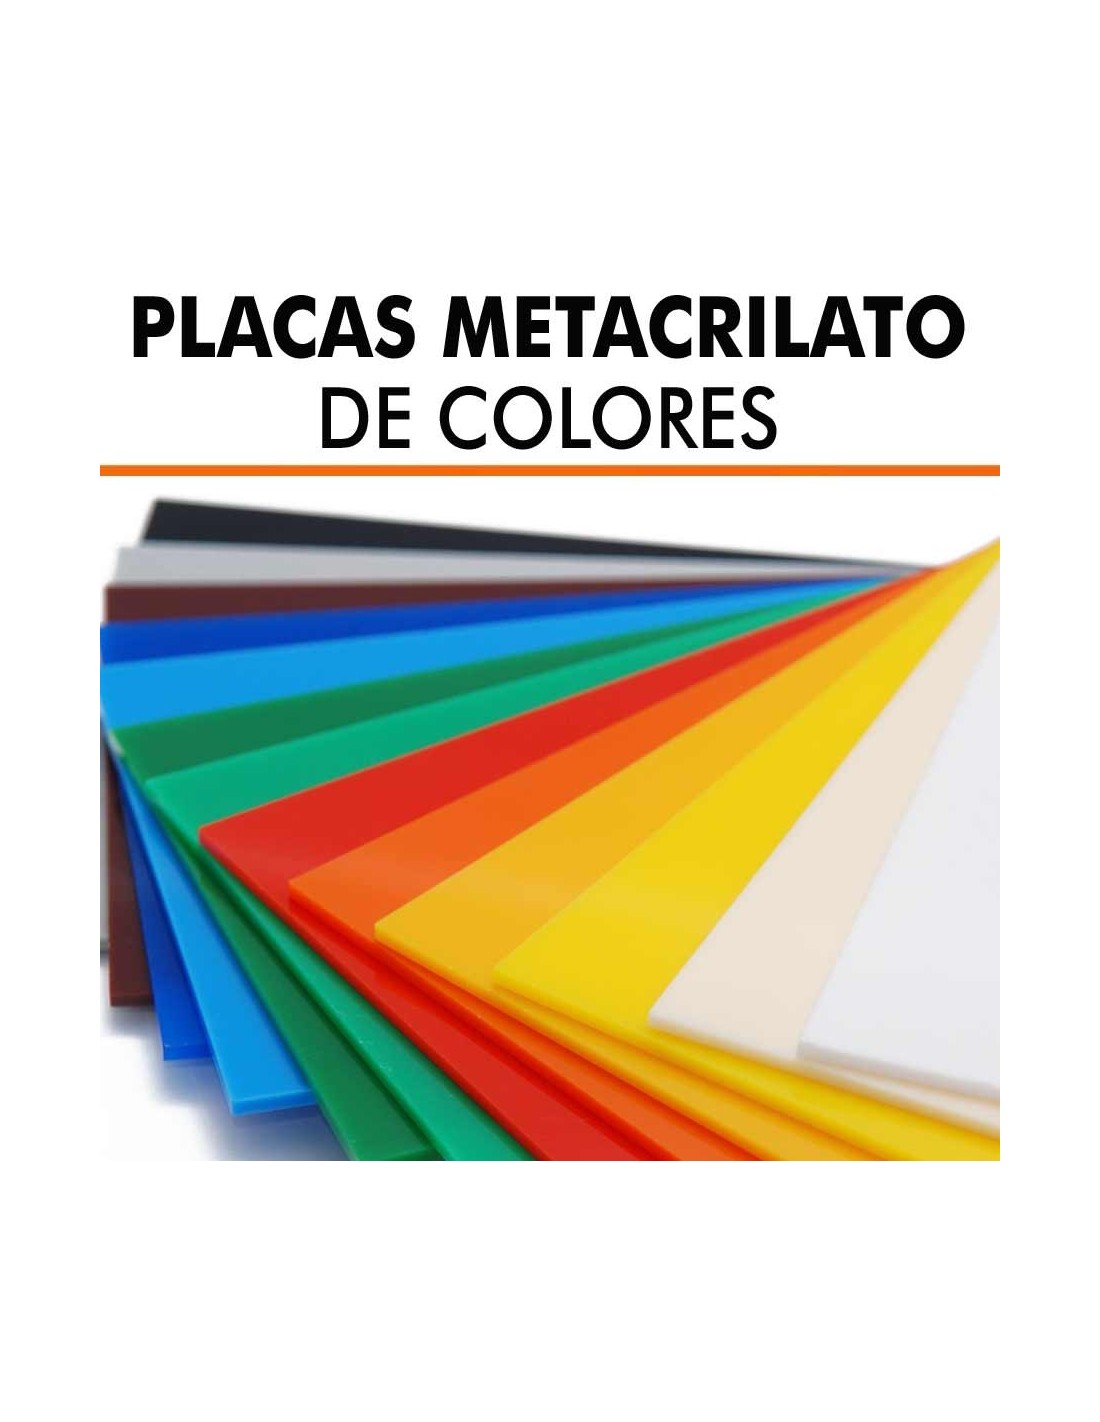 Plancha de Metacrilato opaco colores